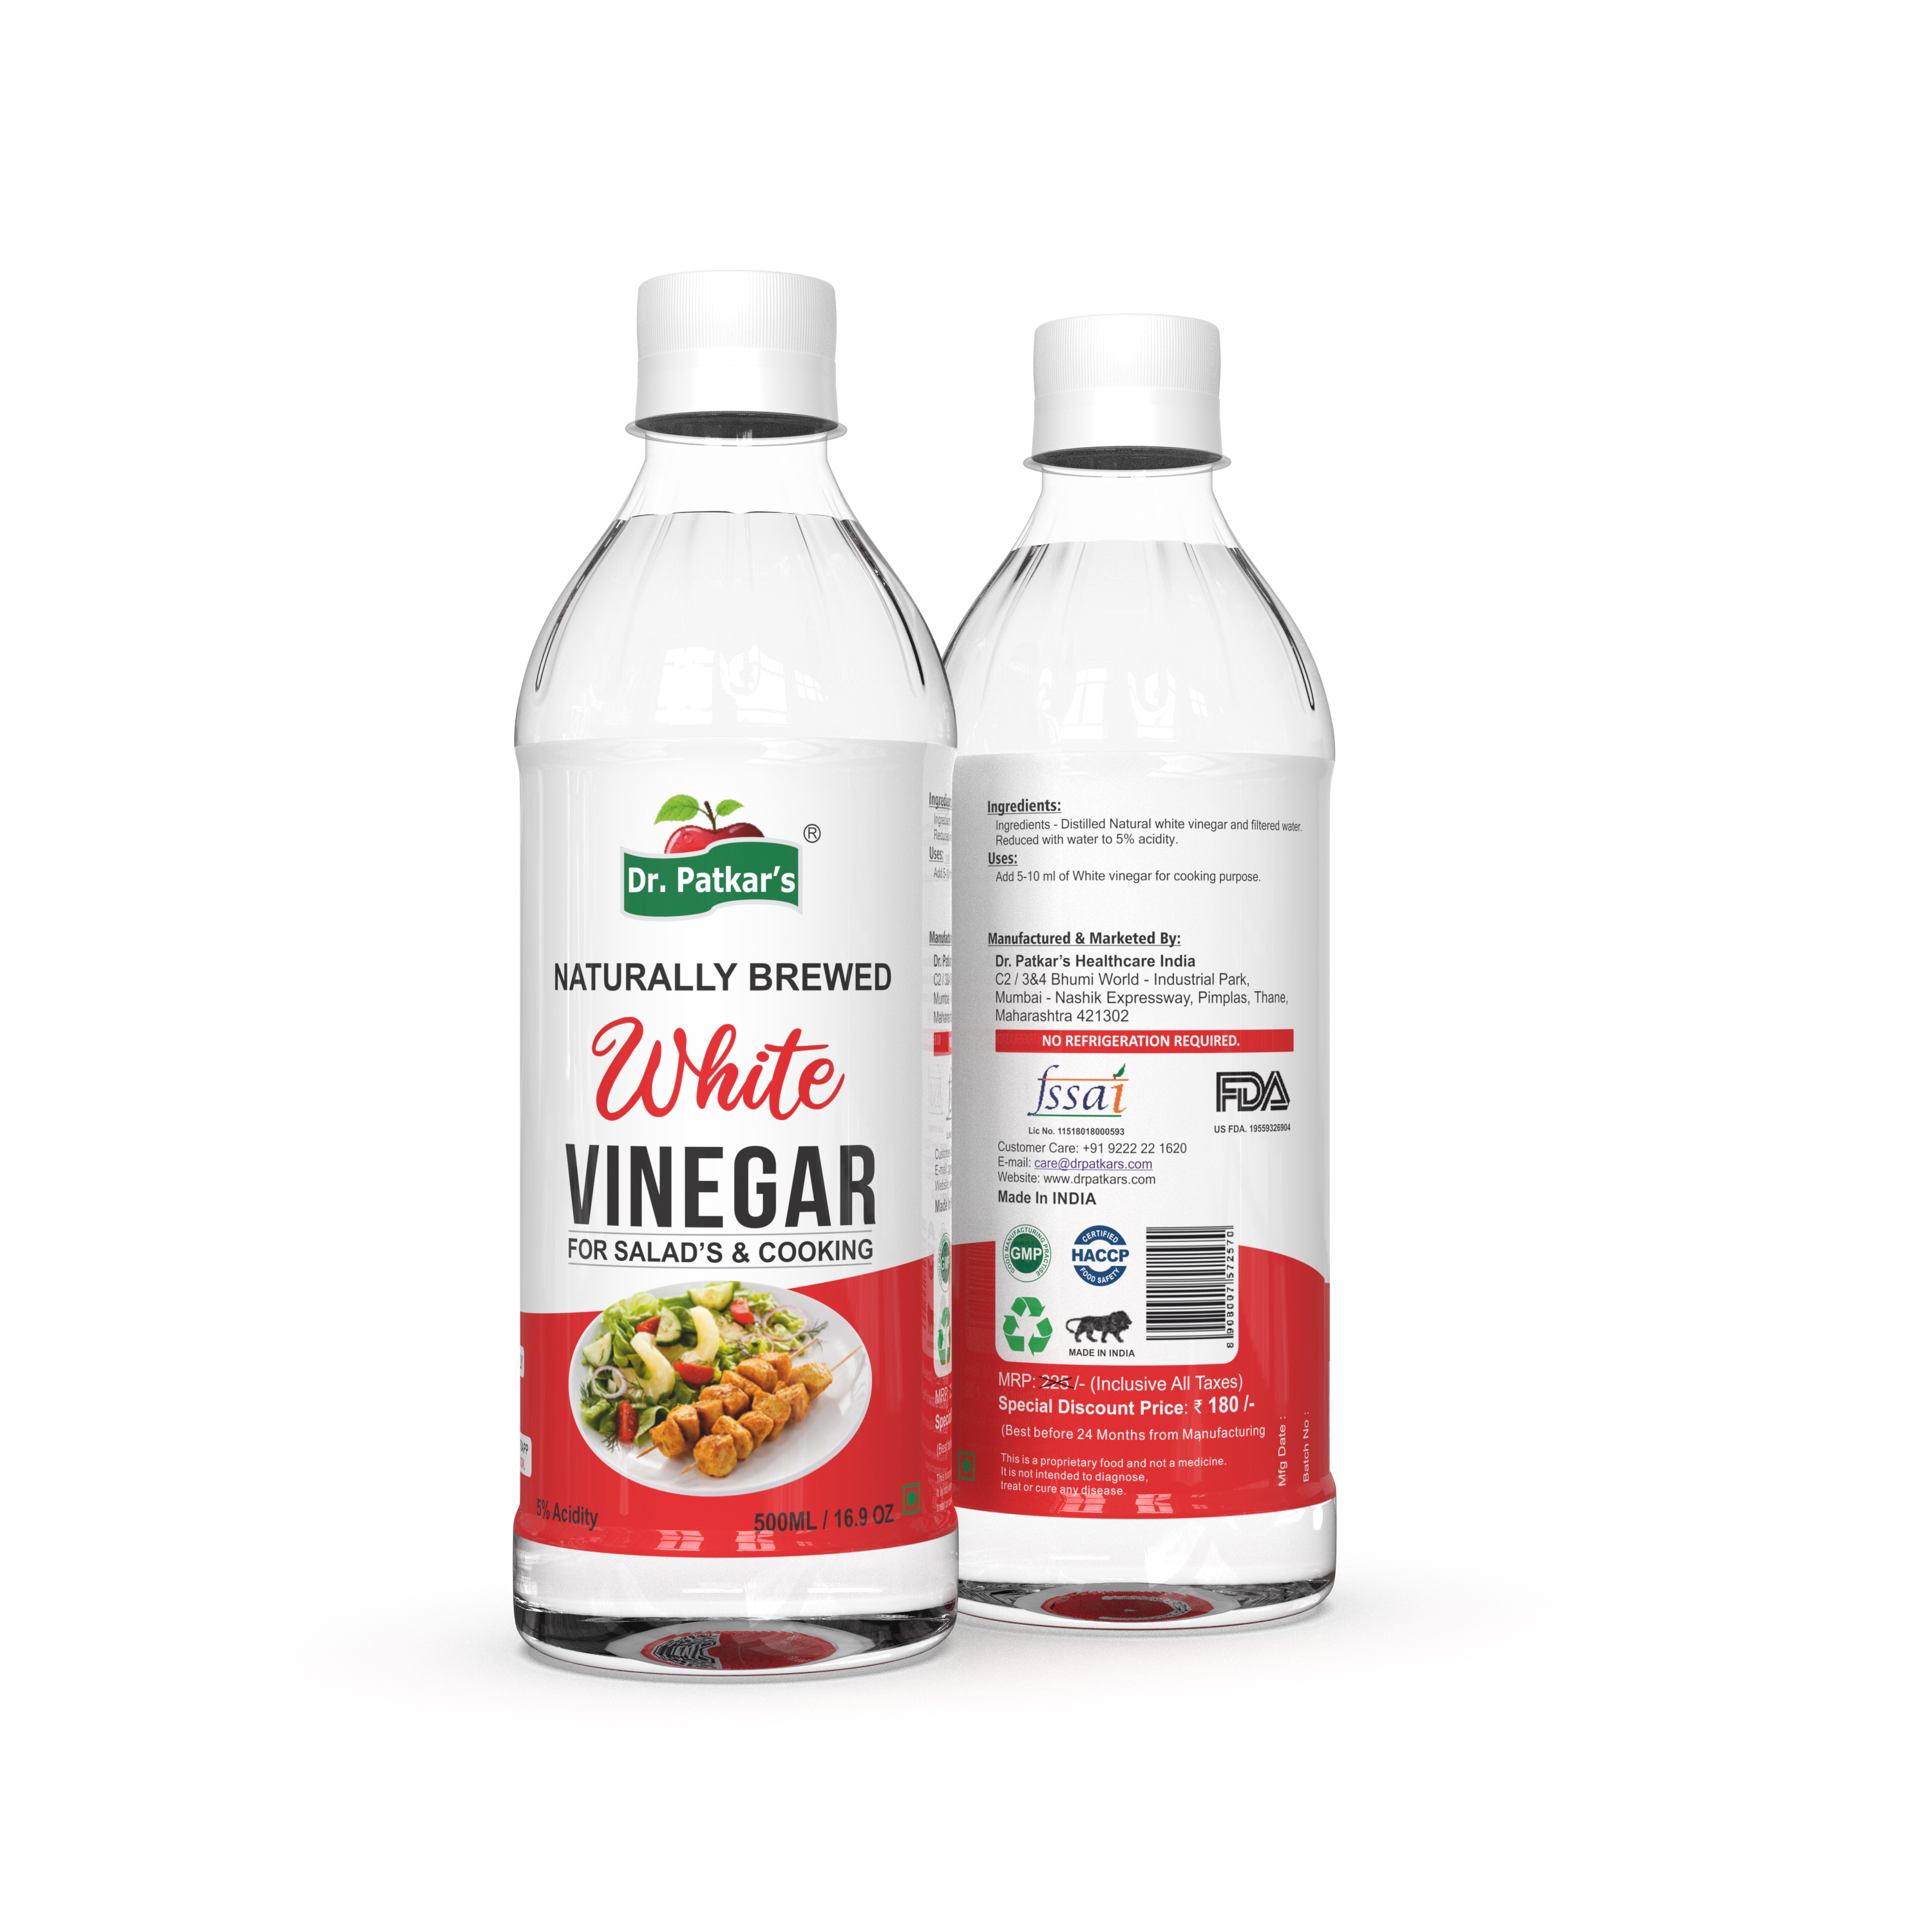 Dr. Patkar's White vinegar